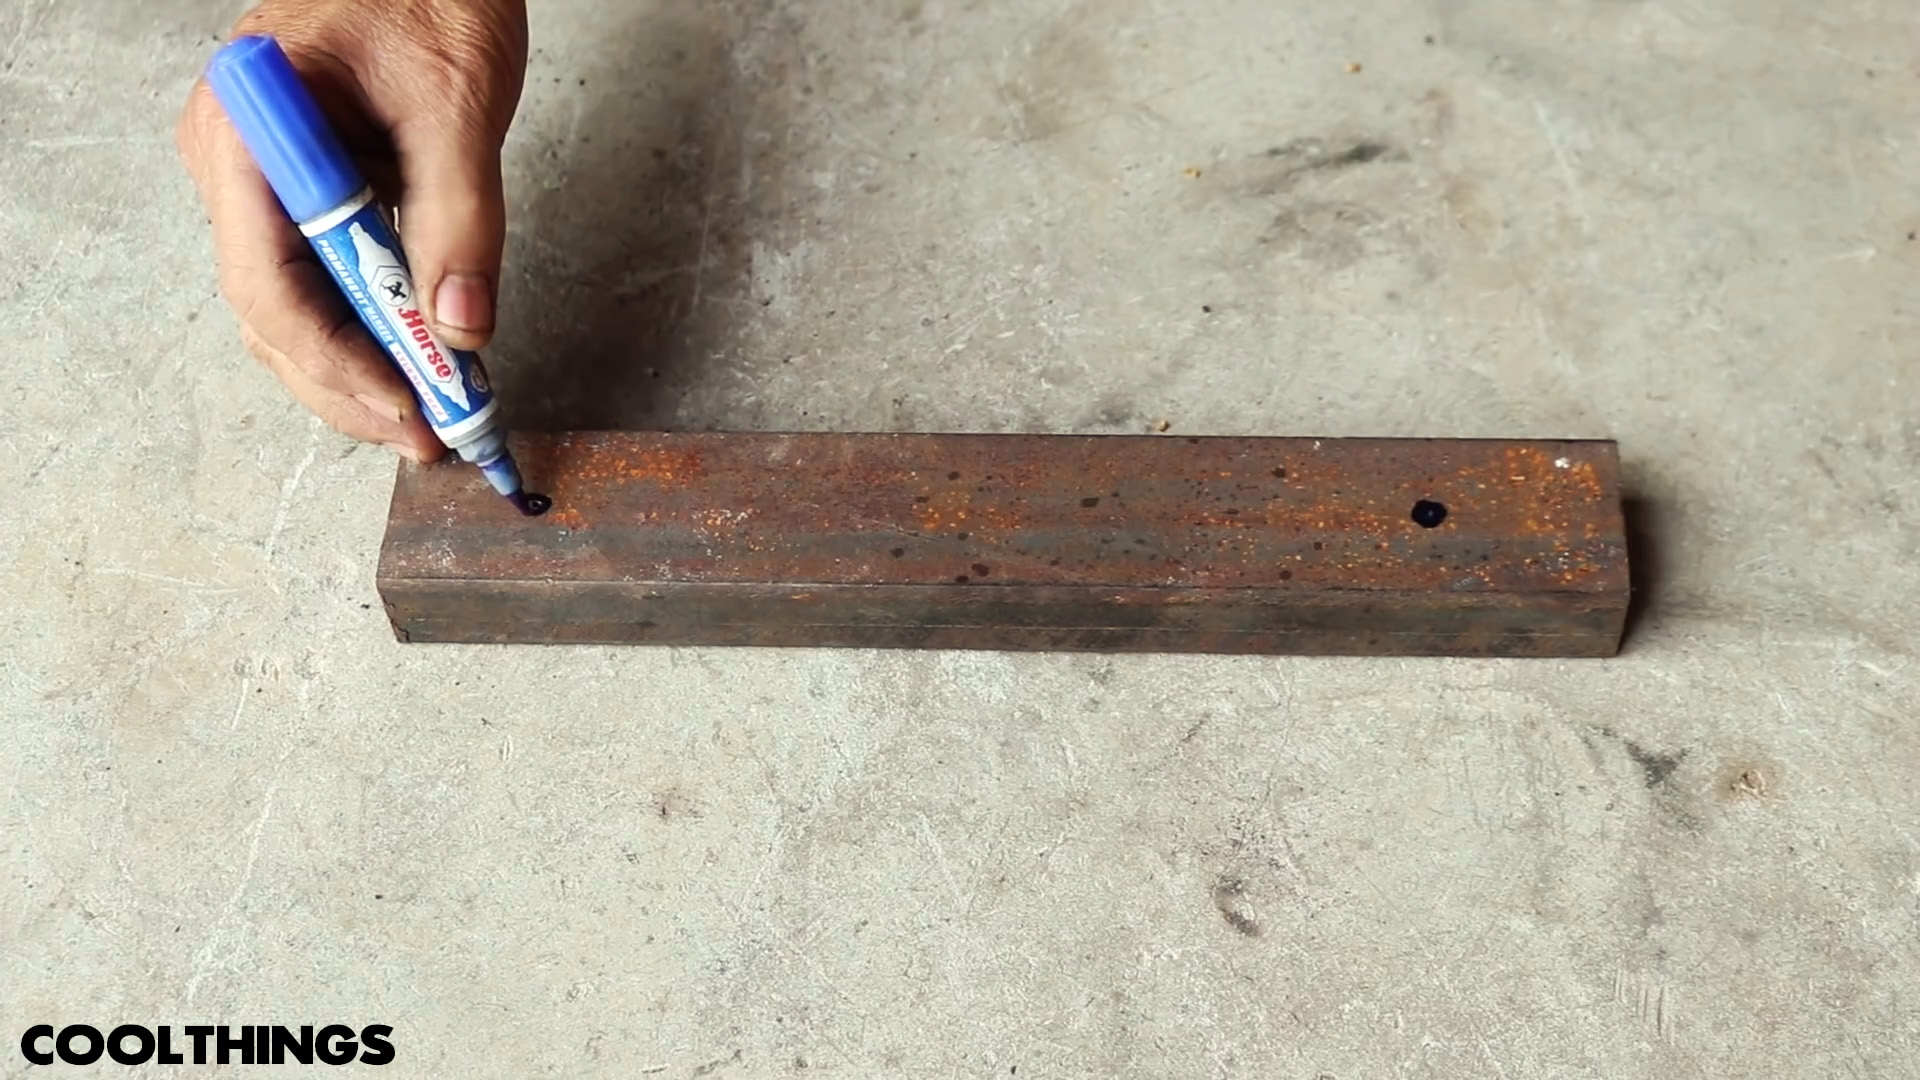 Как сделать съемное приспособление для дрели, которое превратит ее во фрезер для вырезания любых деревянных кругов